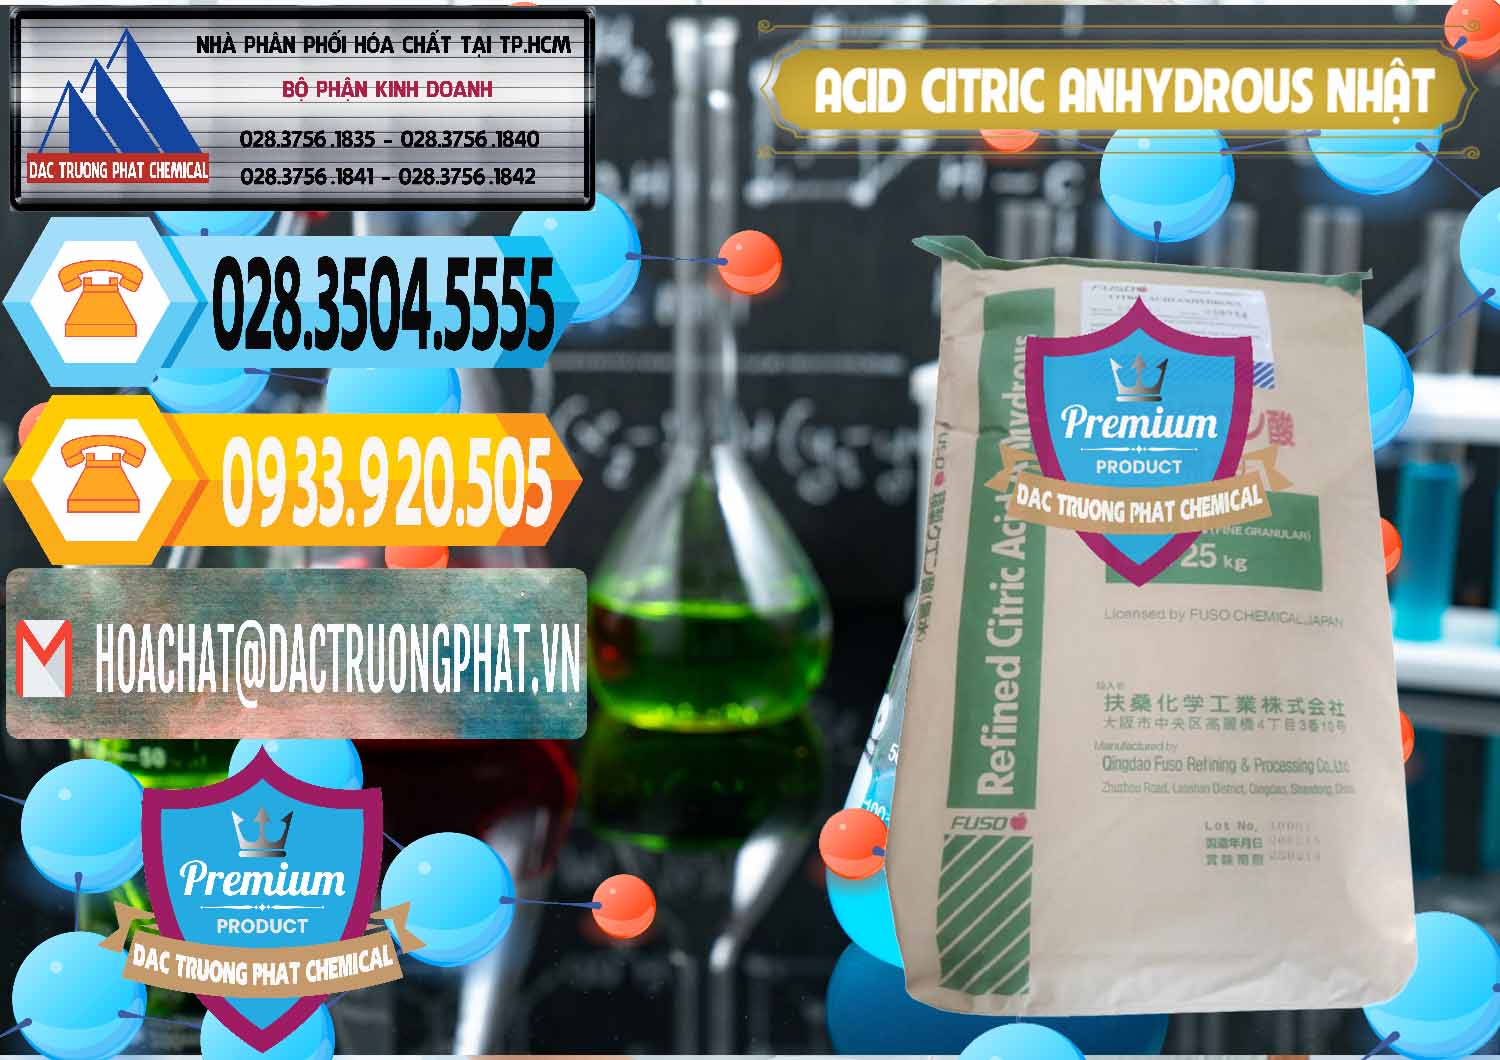 Đơn vị chuyên bán - cung cấp Acid Citric - Axit Citric Anhydrous FUSO Nhật Japan - 0439 - Chuyên bán & cung cấp hóa chất tại TP.HCM - hoachattayrua.net